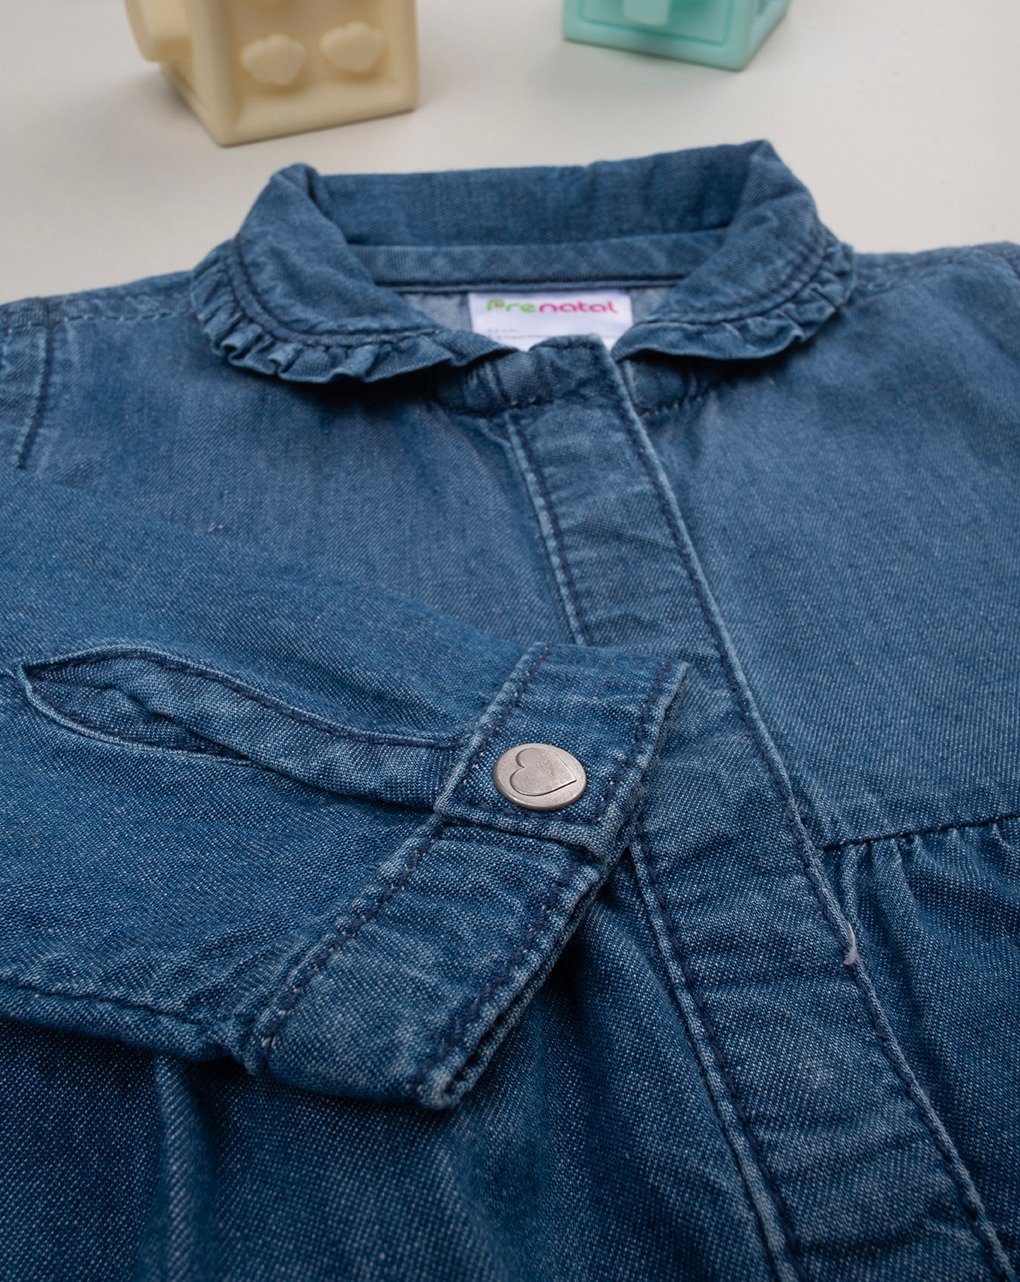 βρεφικό σετ μπλούζα και γκέτα indigo για κορίτσι - Prénatal